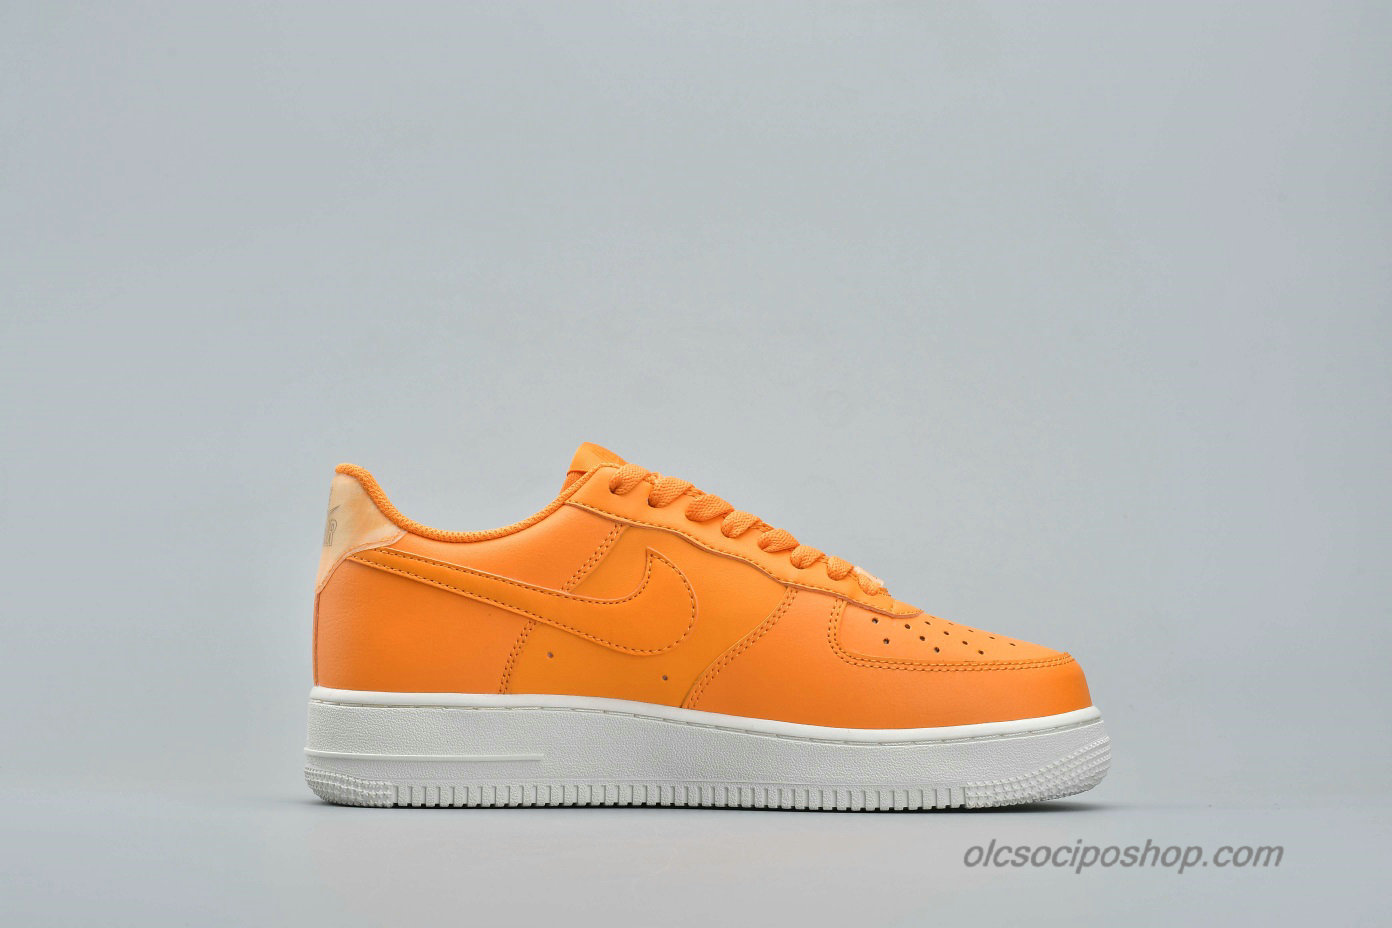 Nike Air Force 1 Low QS Narancs/Piszkosfehér Cipők (AO2132-801)